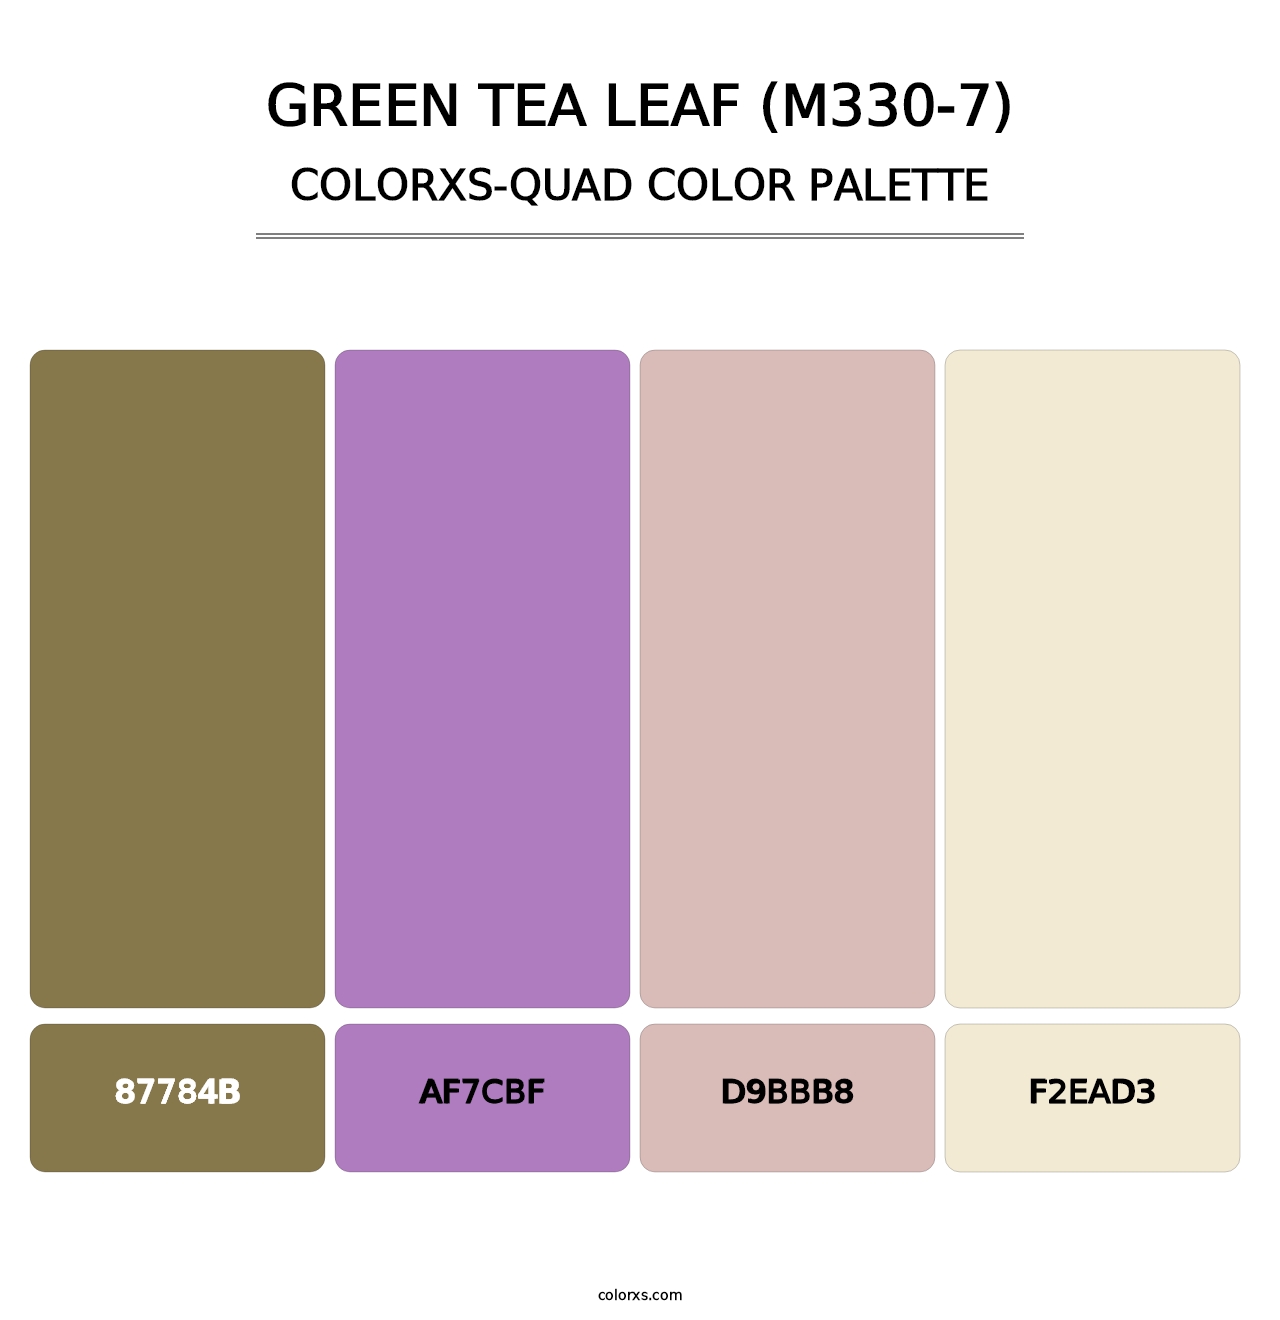 Green Tea Leaf (M330-7) - Colorxs Quad Palette